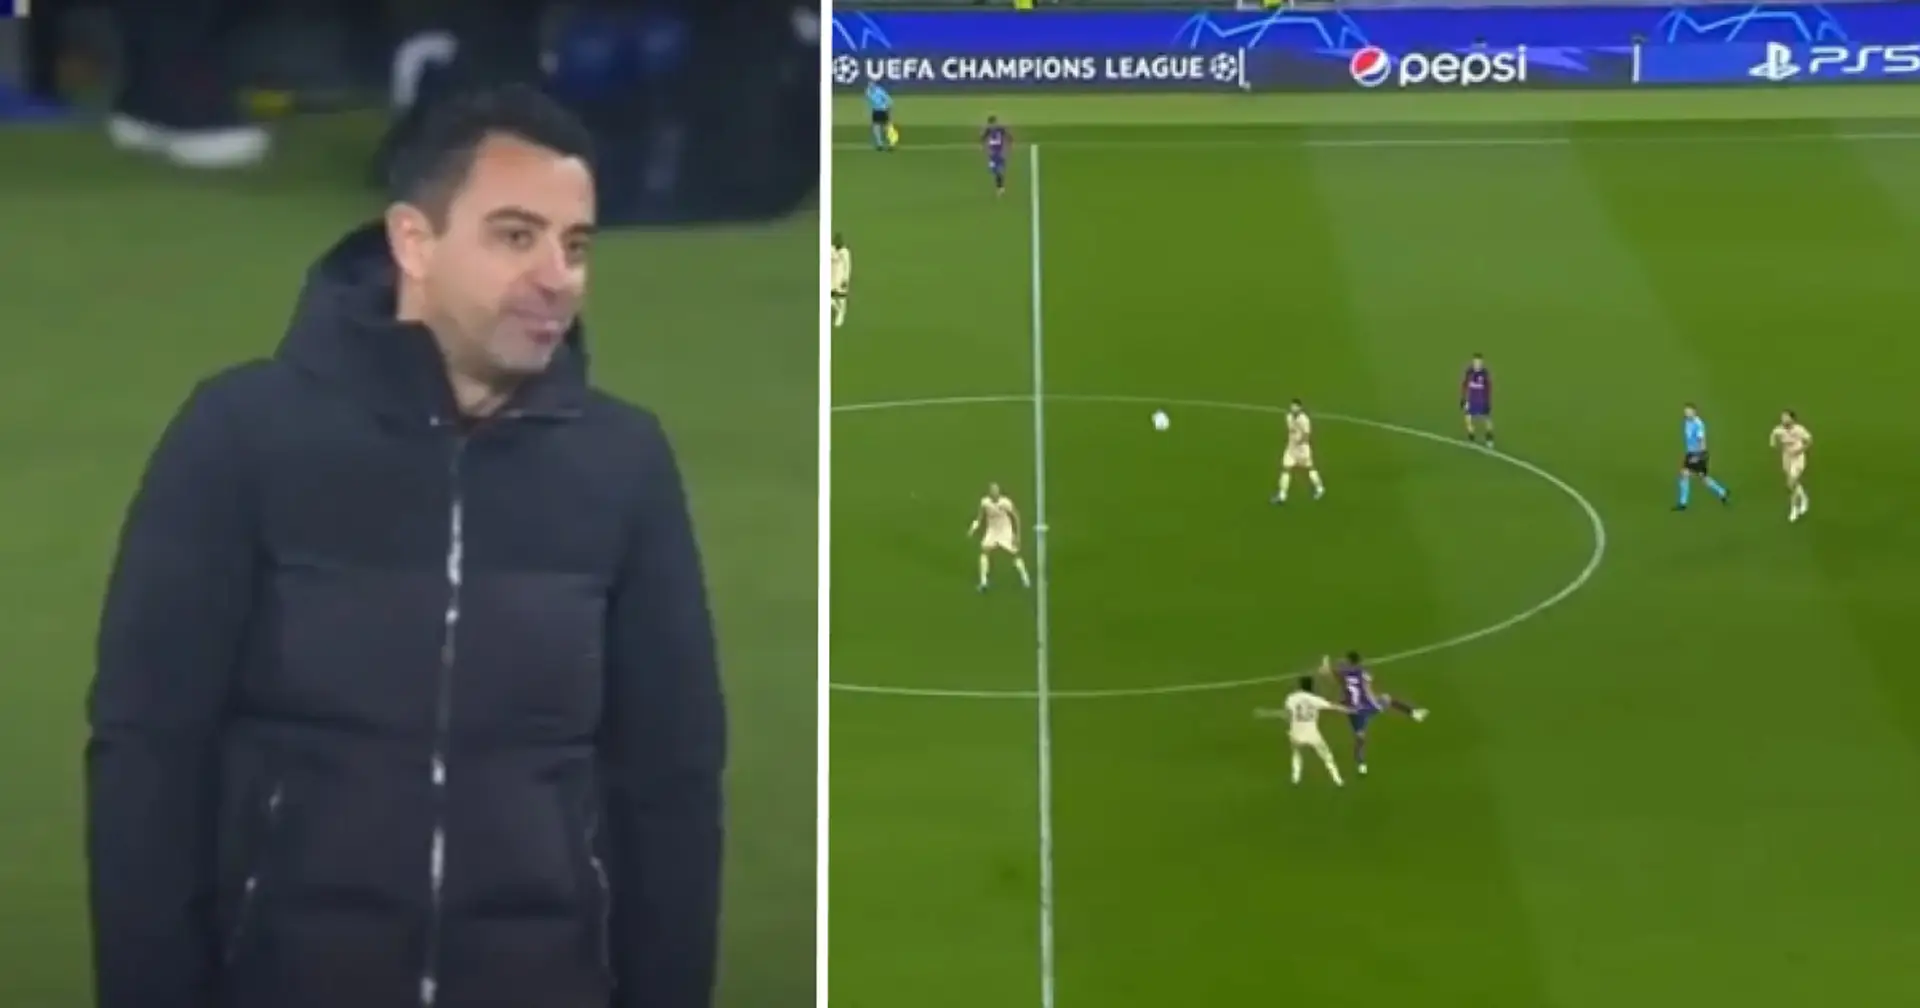 "Difficile à regarder": un fan voit un joueur du Barça se promener pendant que ses coéquipiers s'efforcent de battre Porto